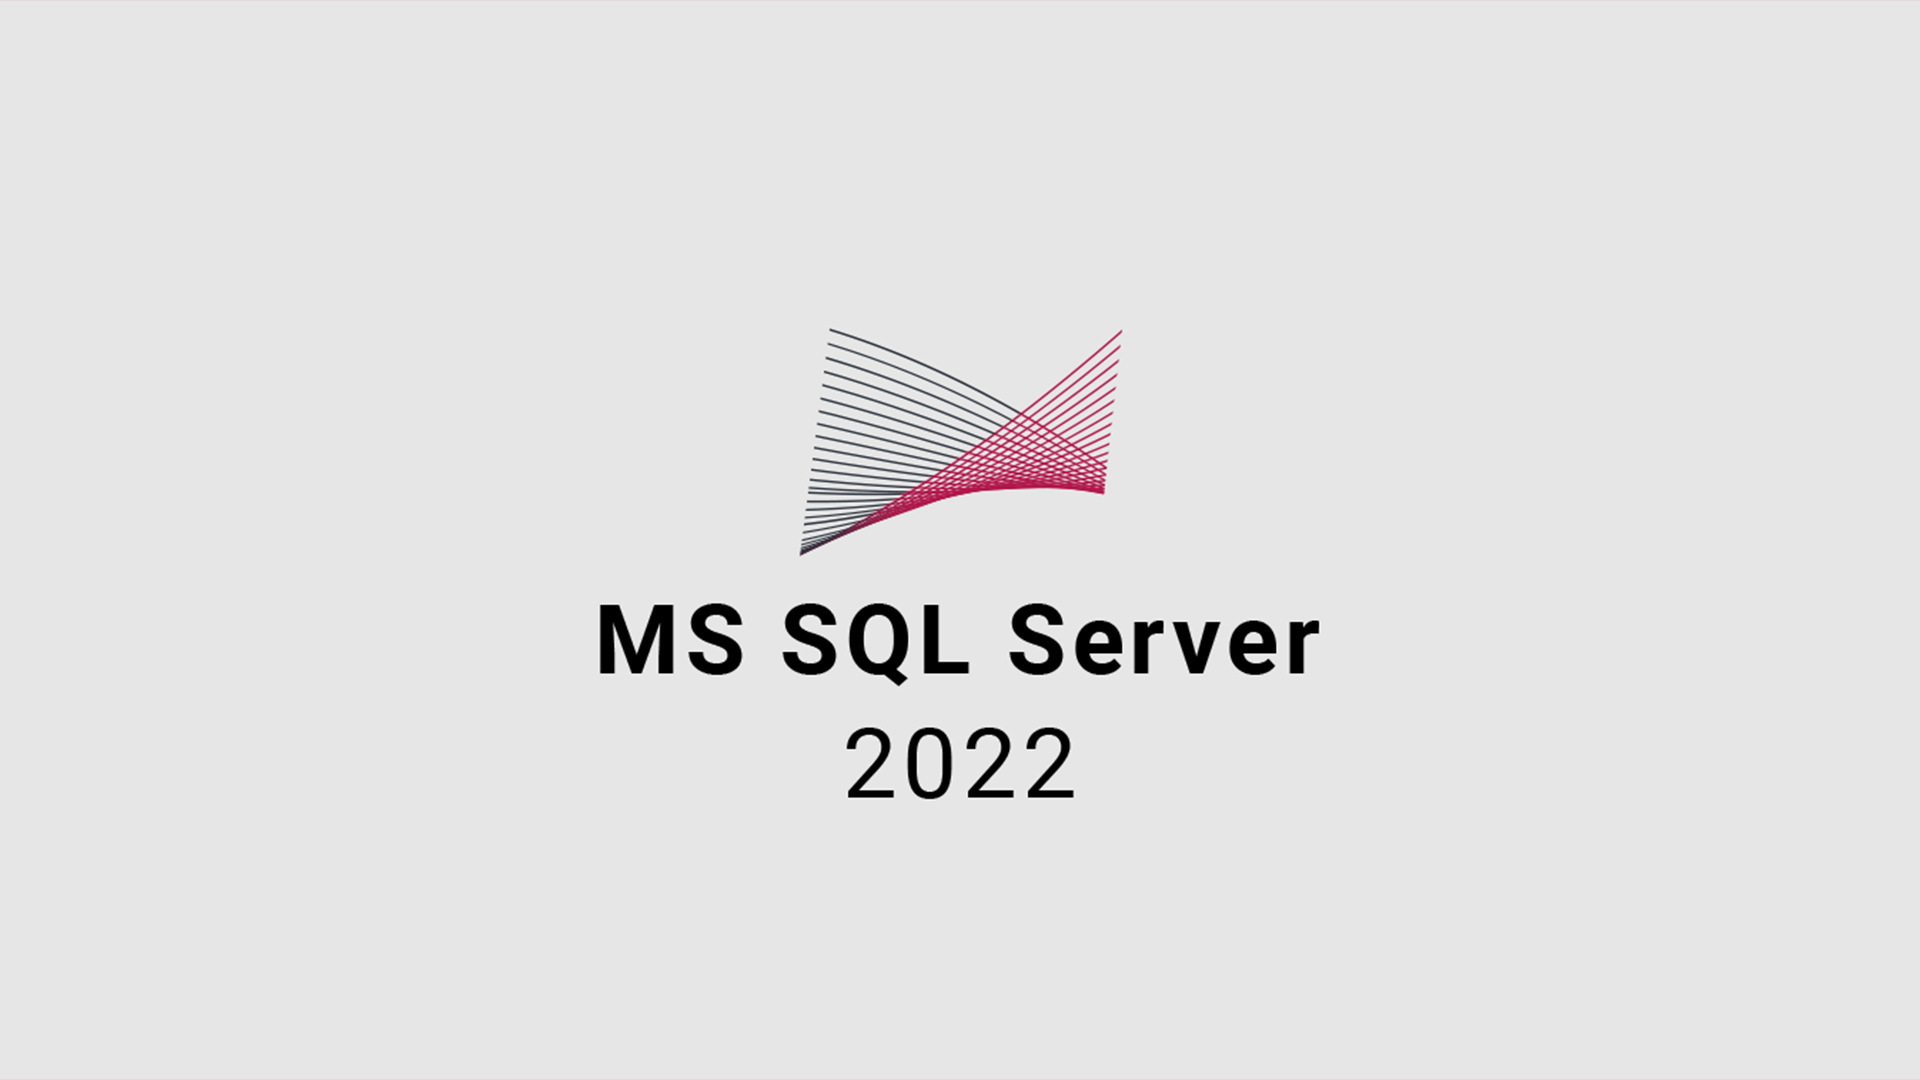 MS SQL Server 2022 CD Key USD 111.87